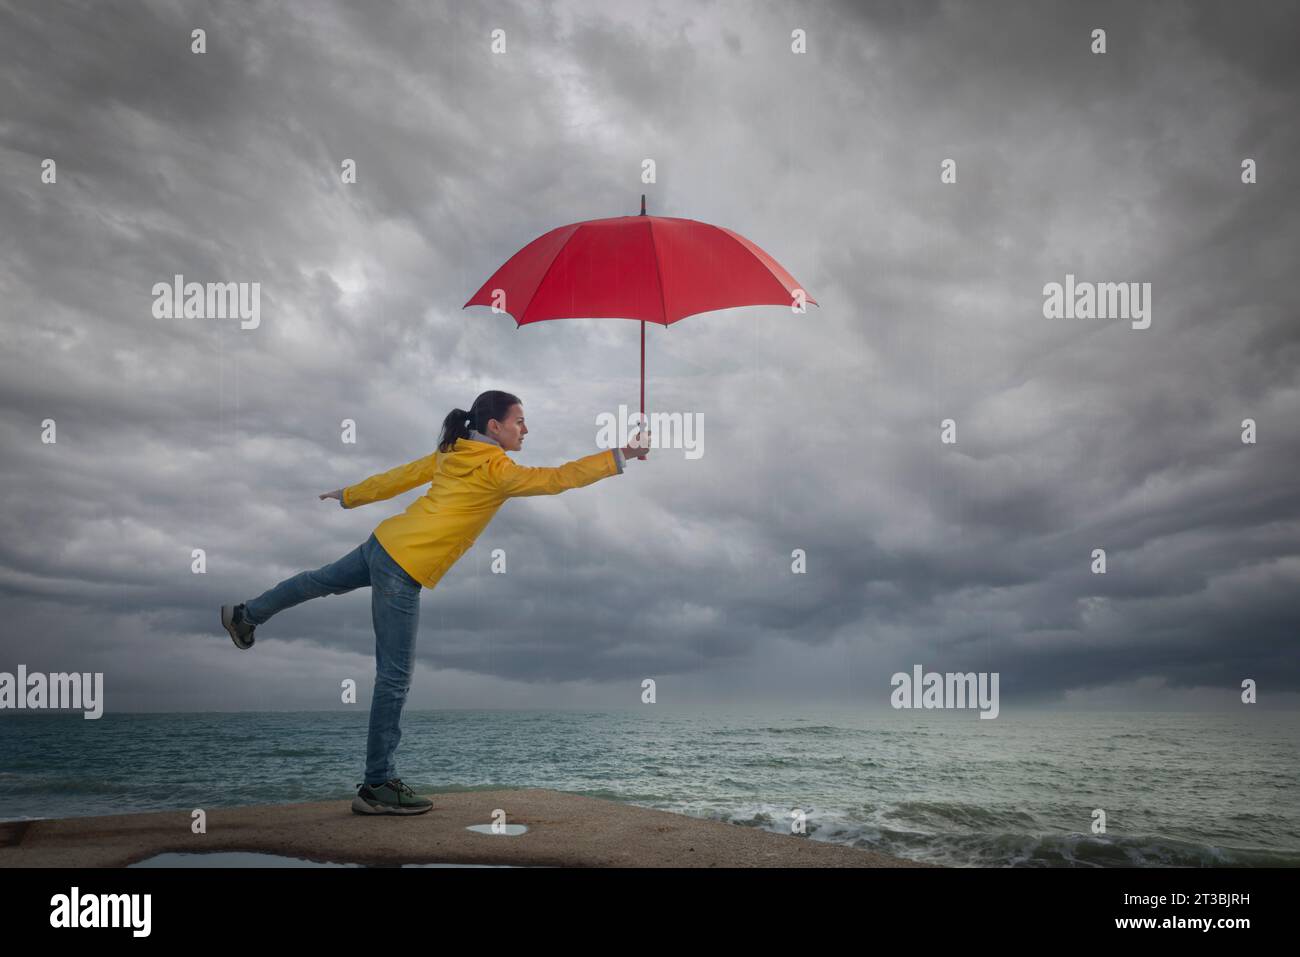 Eine Frau, die einen stürmischen Himmel sieht, einen roten Regenschirm hält und einen gelben Mantel trägt. Stürmisches Wetterkonzept. Stockfoto